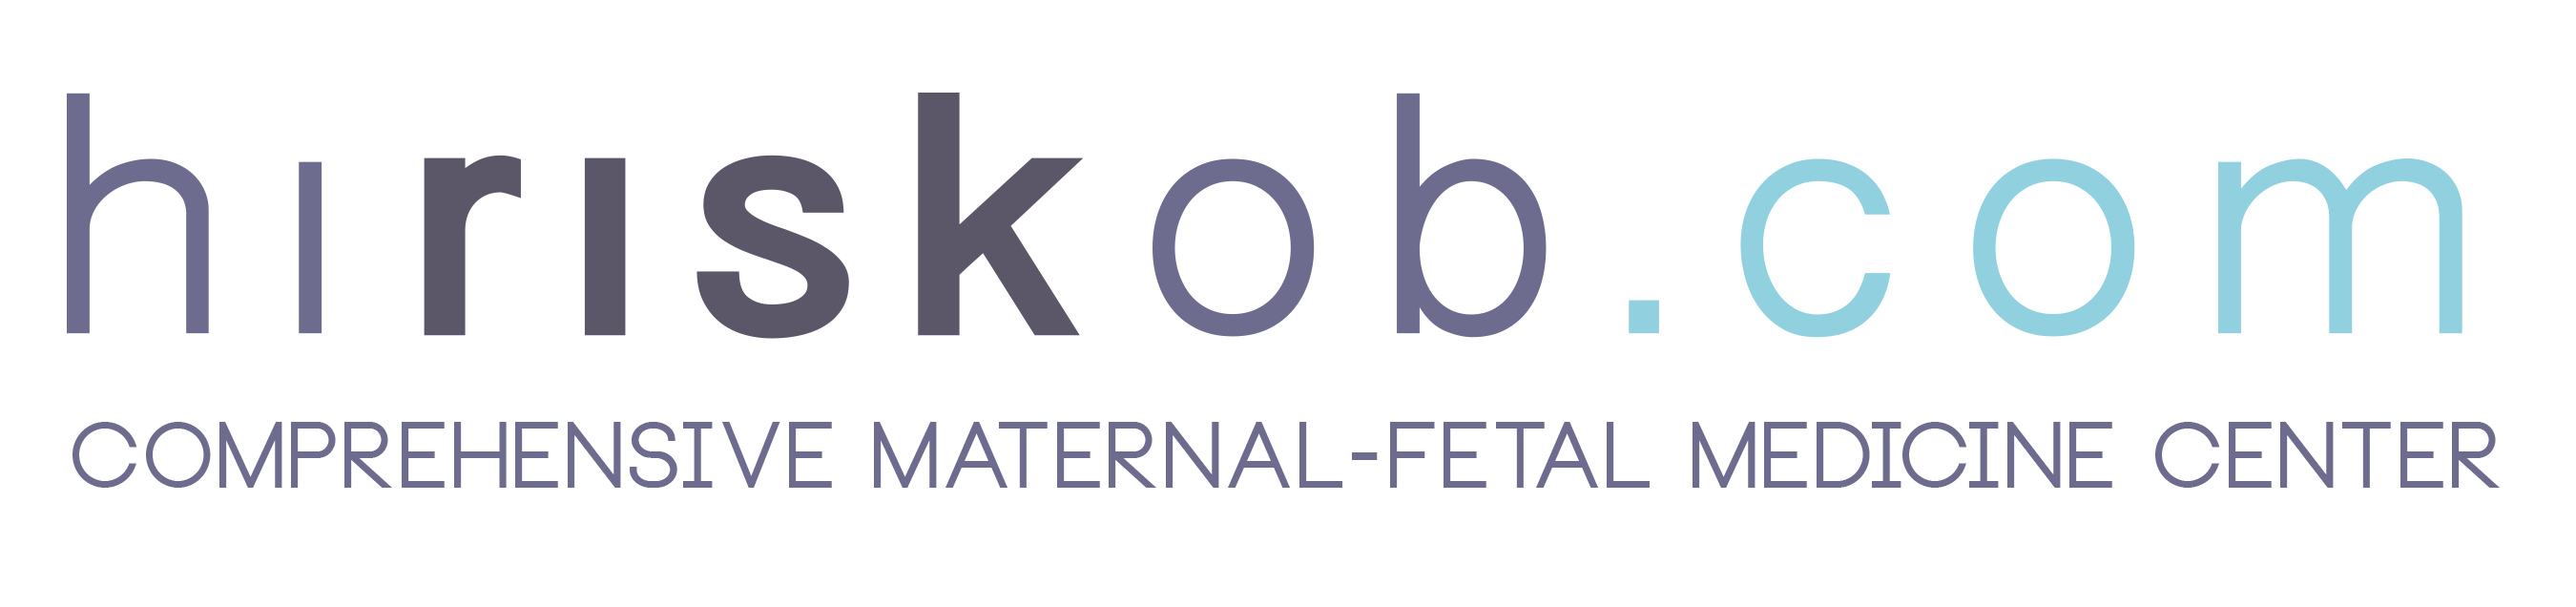 Comprehensive Maternal-Fetal Medicine Consultations